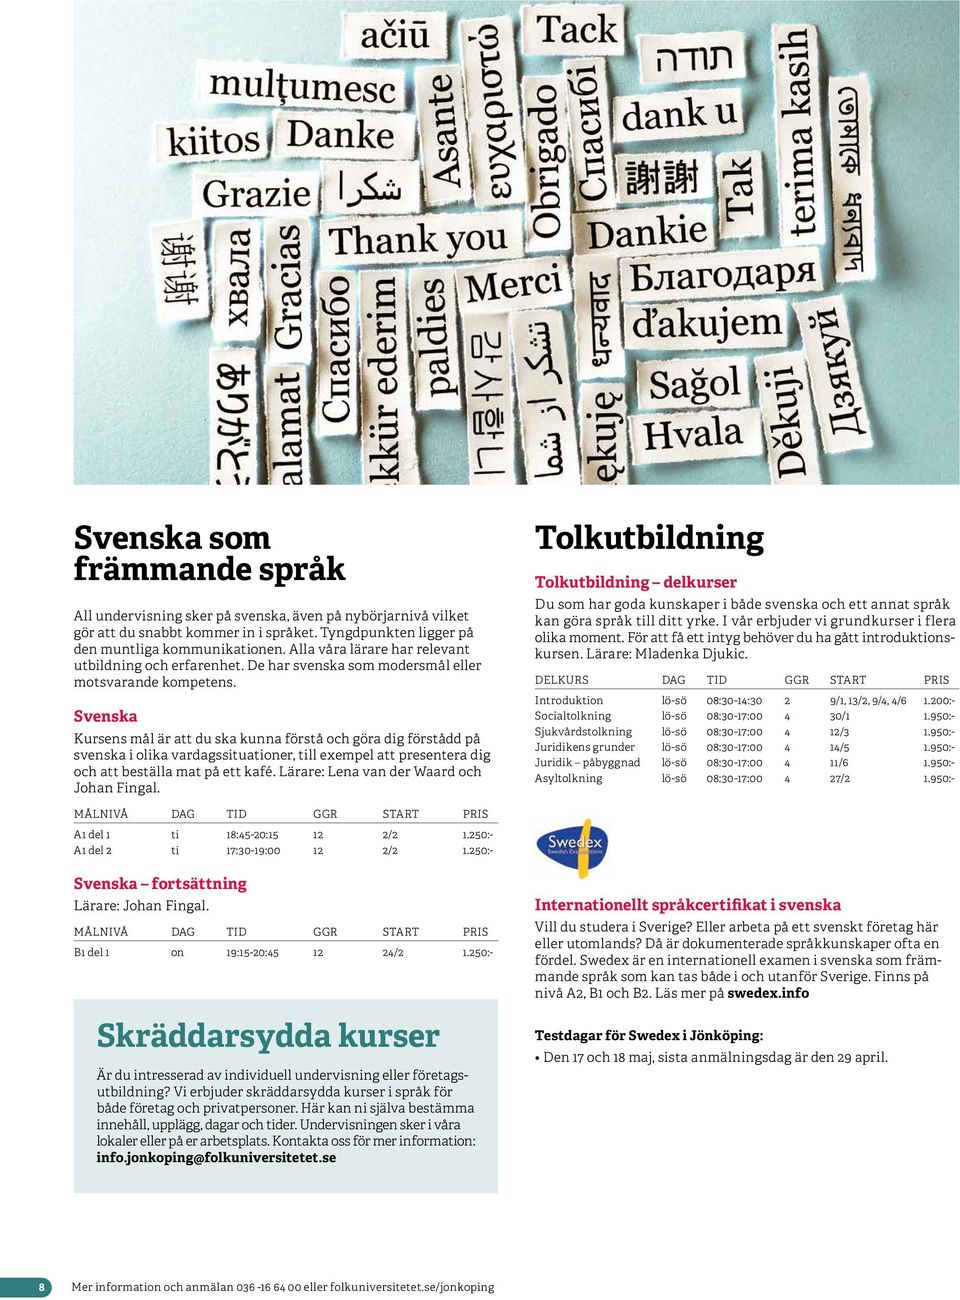 Svenska Kursens mål är att du ska kunna förstå och göra dig förstådd på svenska i olika vardagssituationer, till exempel att presentera dig och att beställa mat på ett kafé.